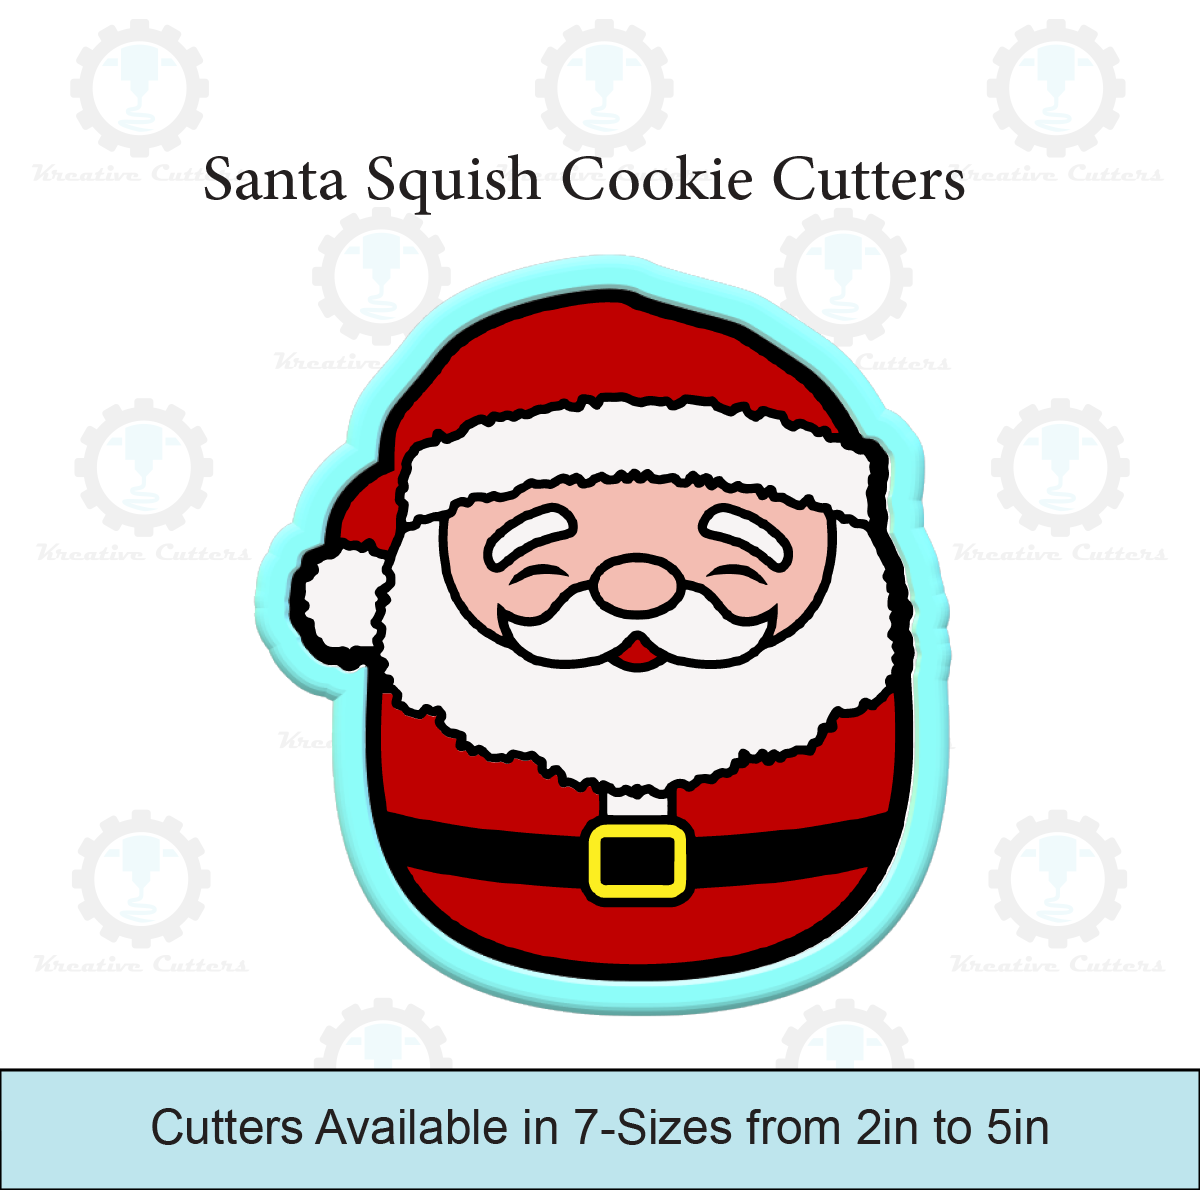 Santa Squish Cookie Cutters